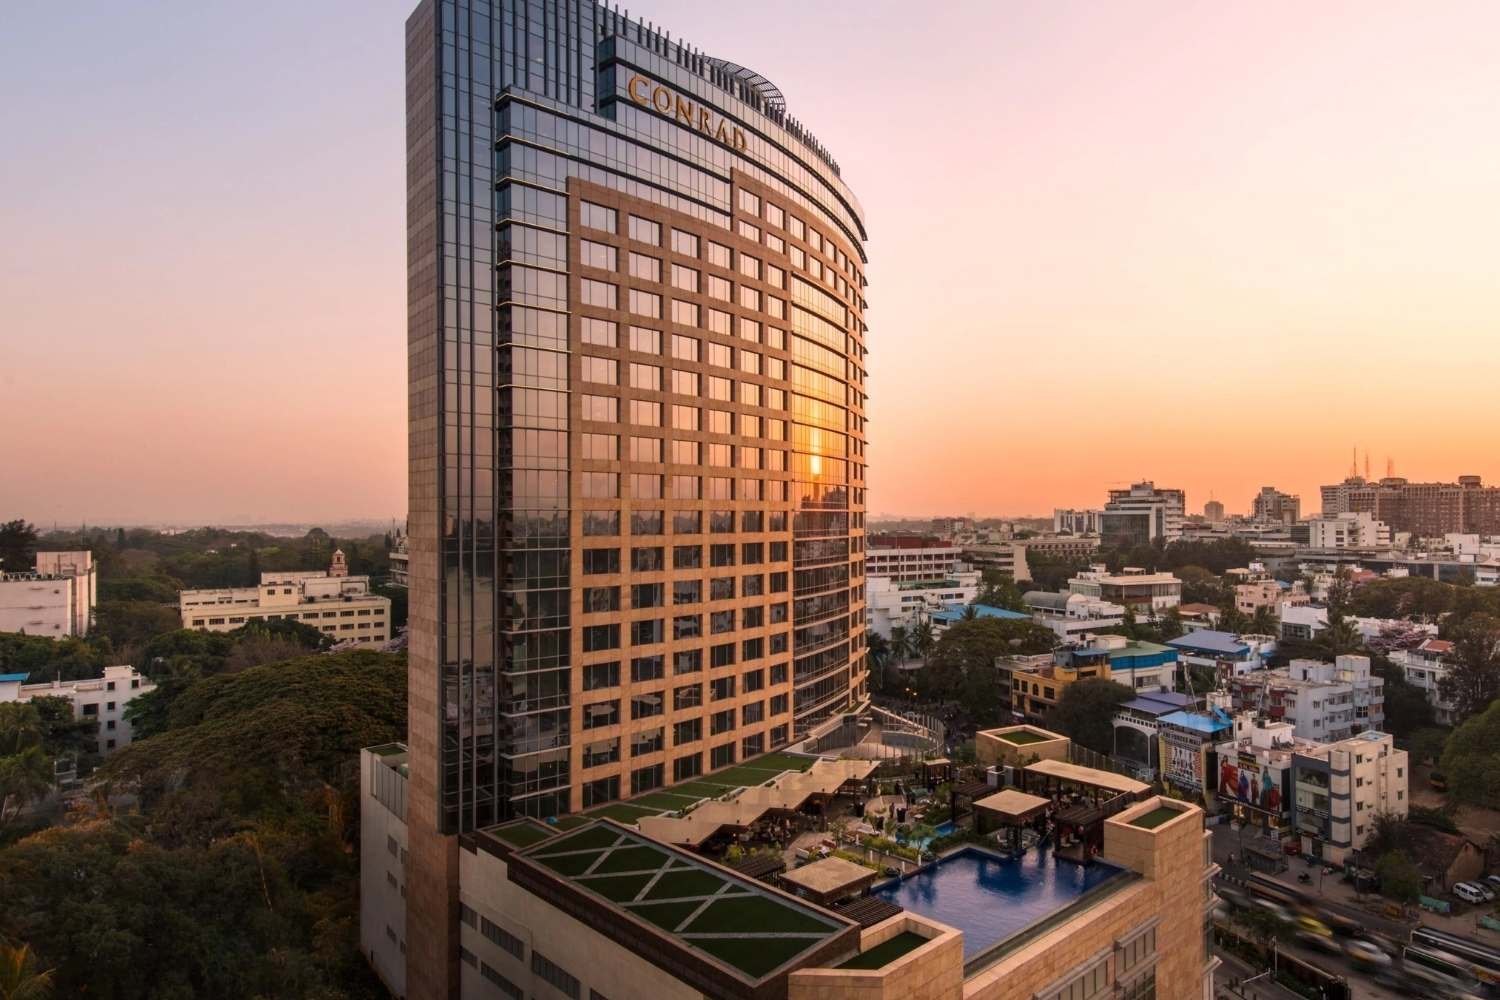 Conrad Bangalore, affluent wedding hotels in Bangalore